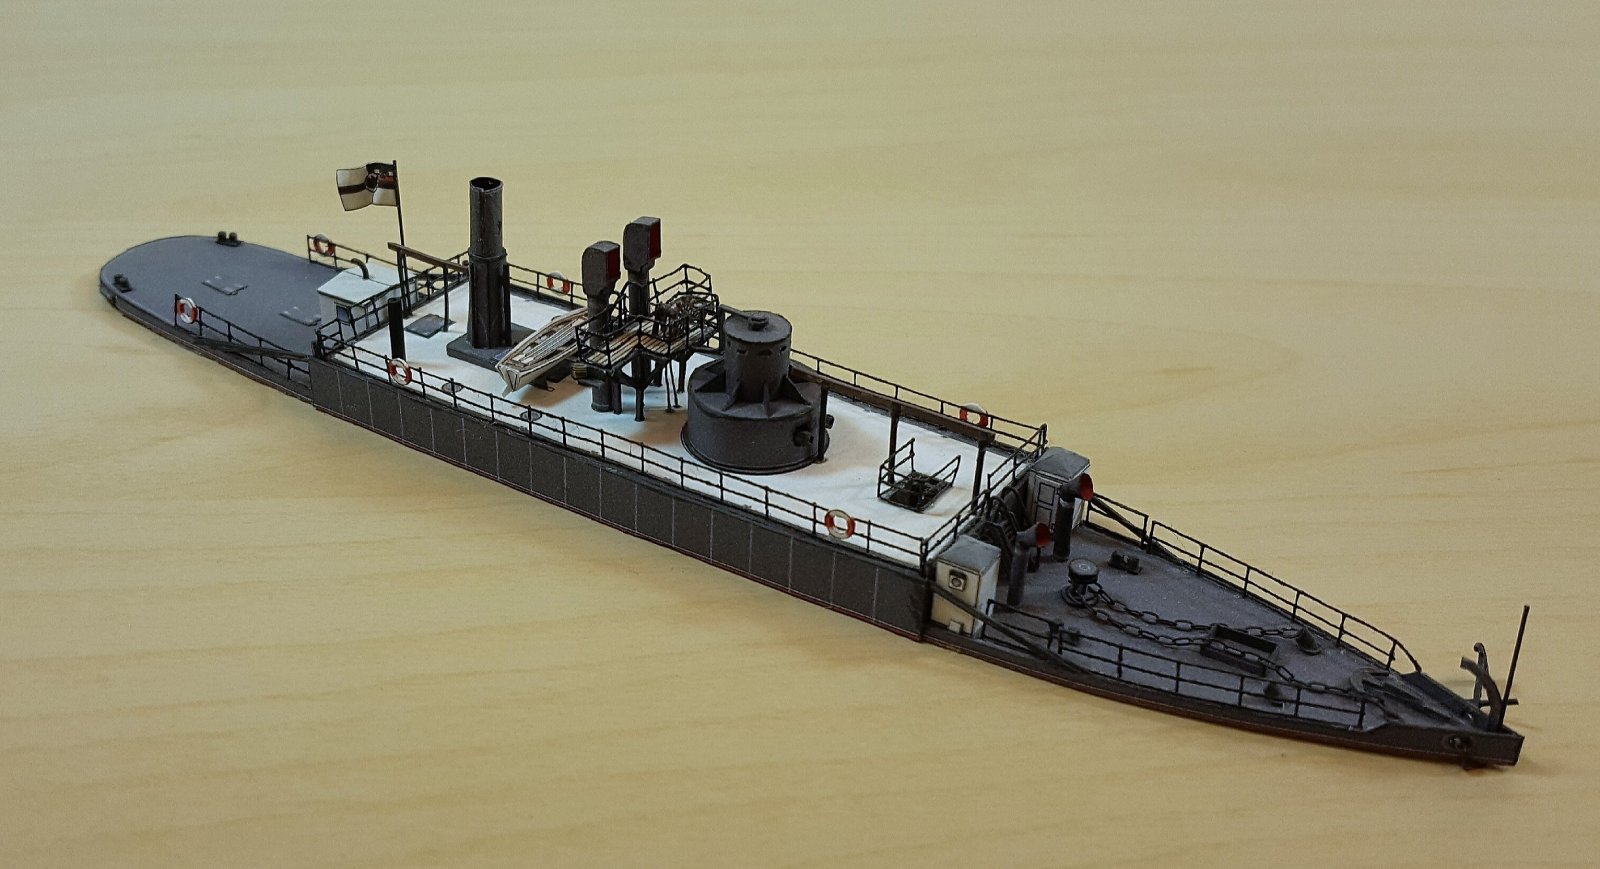 SMS Rhein by ccoyle - Paper Shipwright